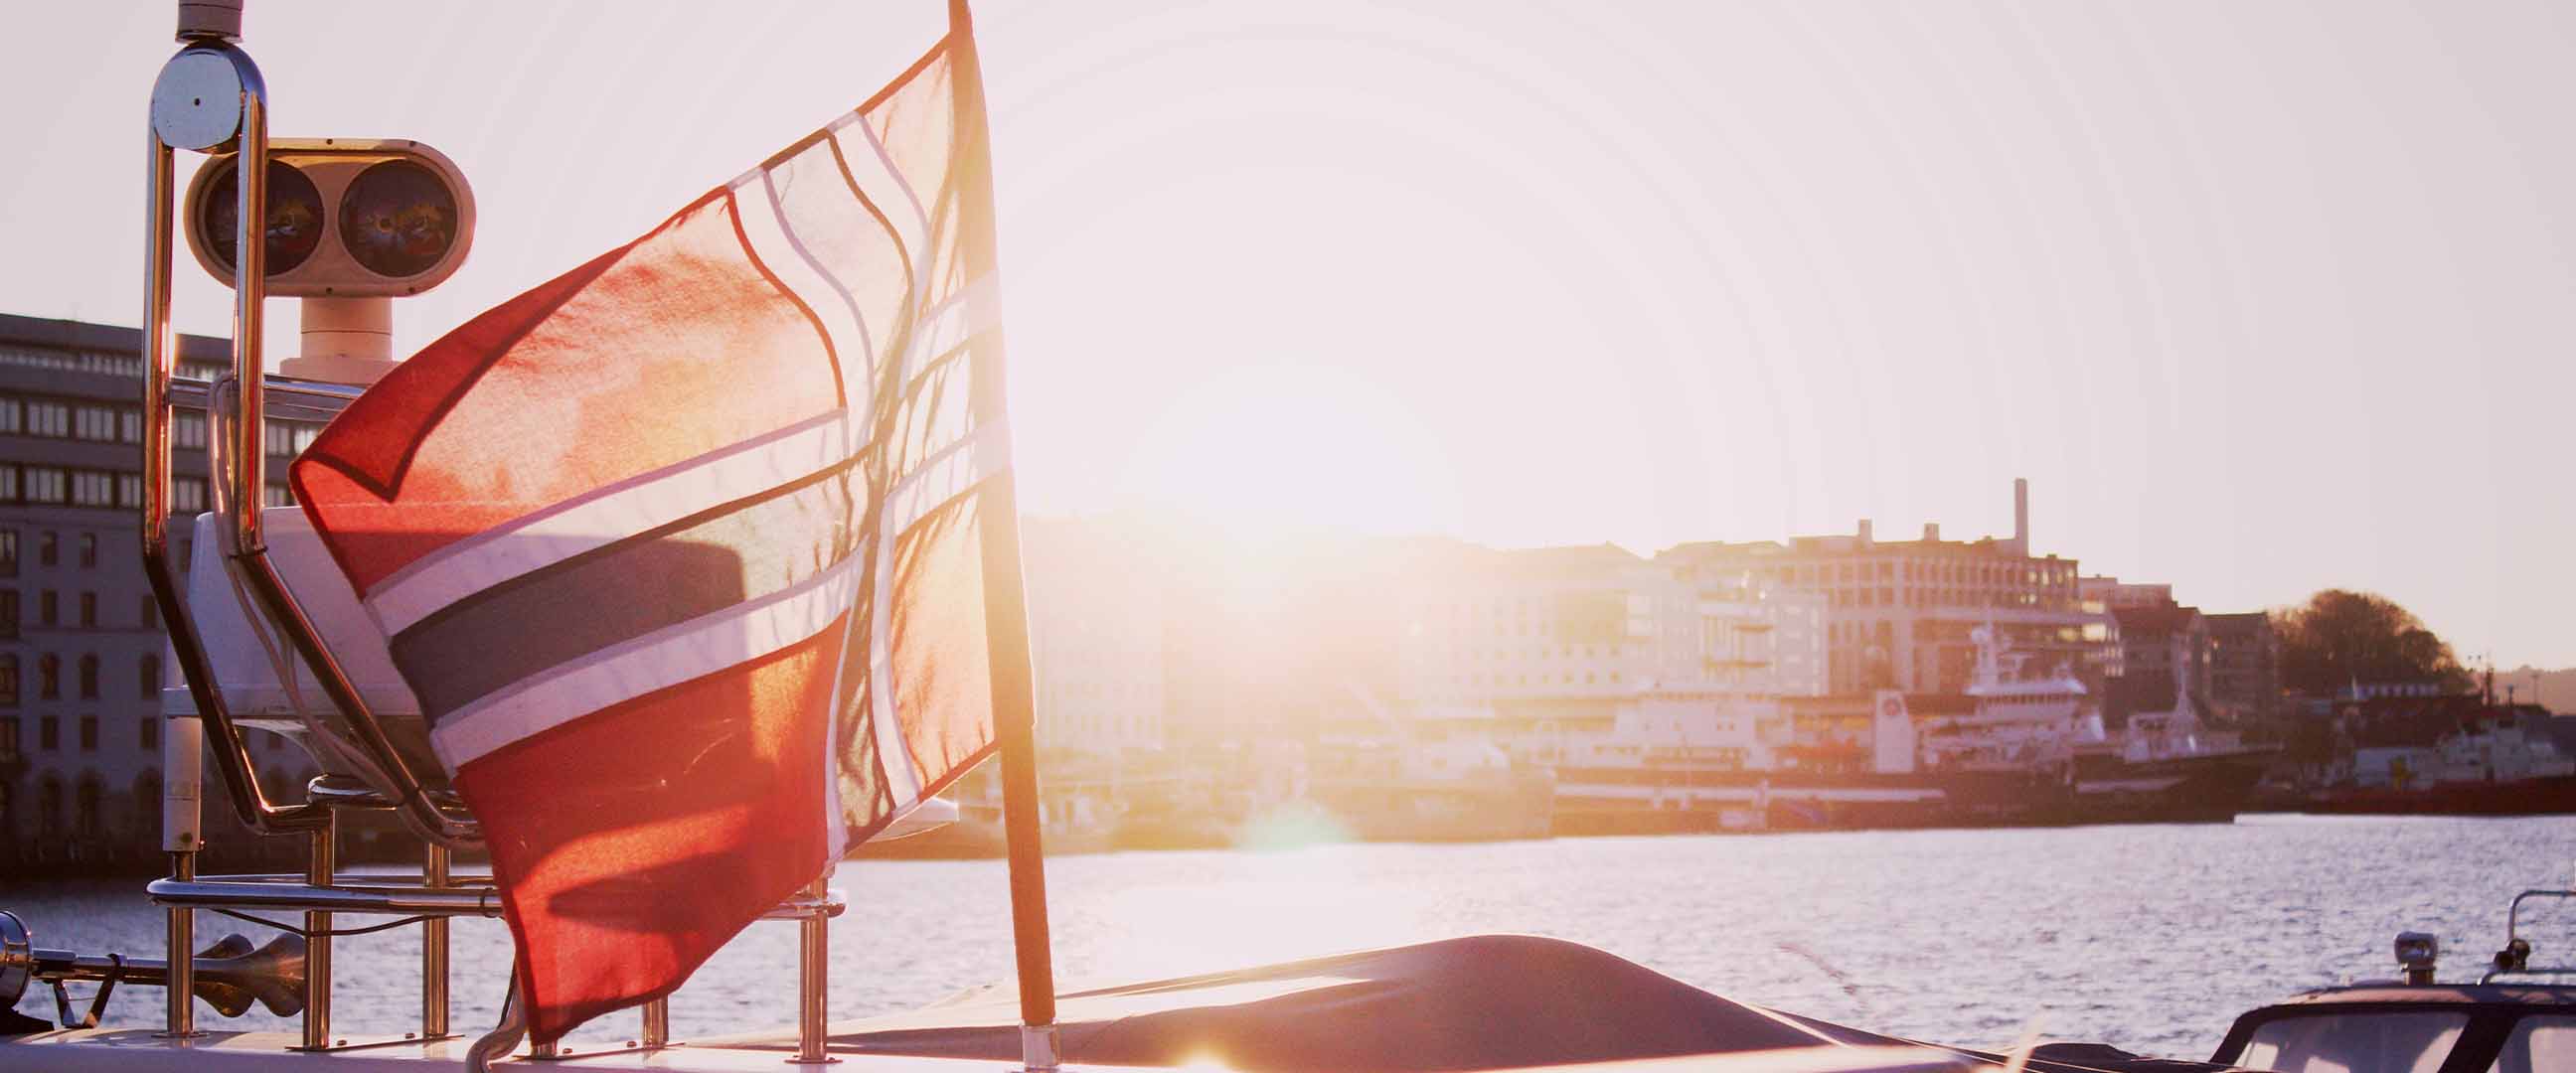 Norsk flagga på båt i motljus, med stadsmiljö i bakgrunden